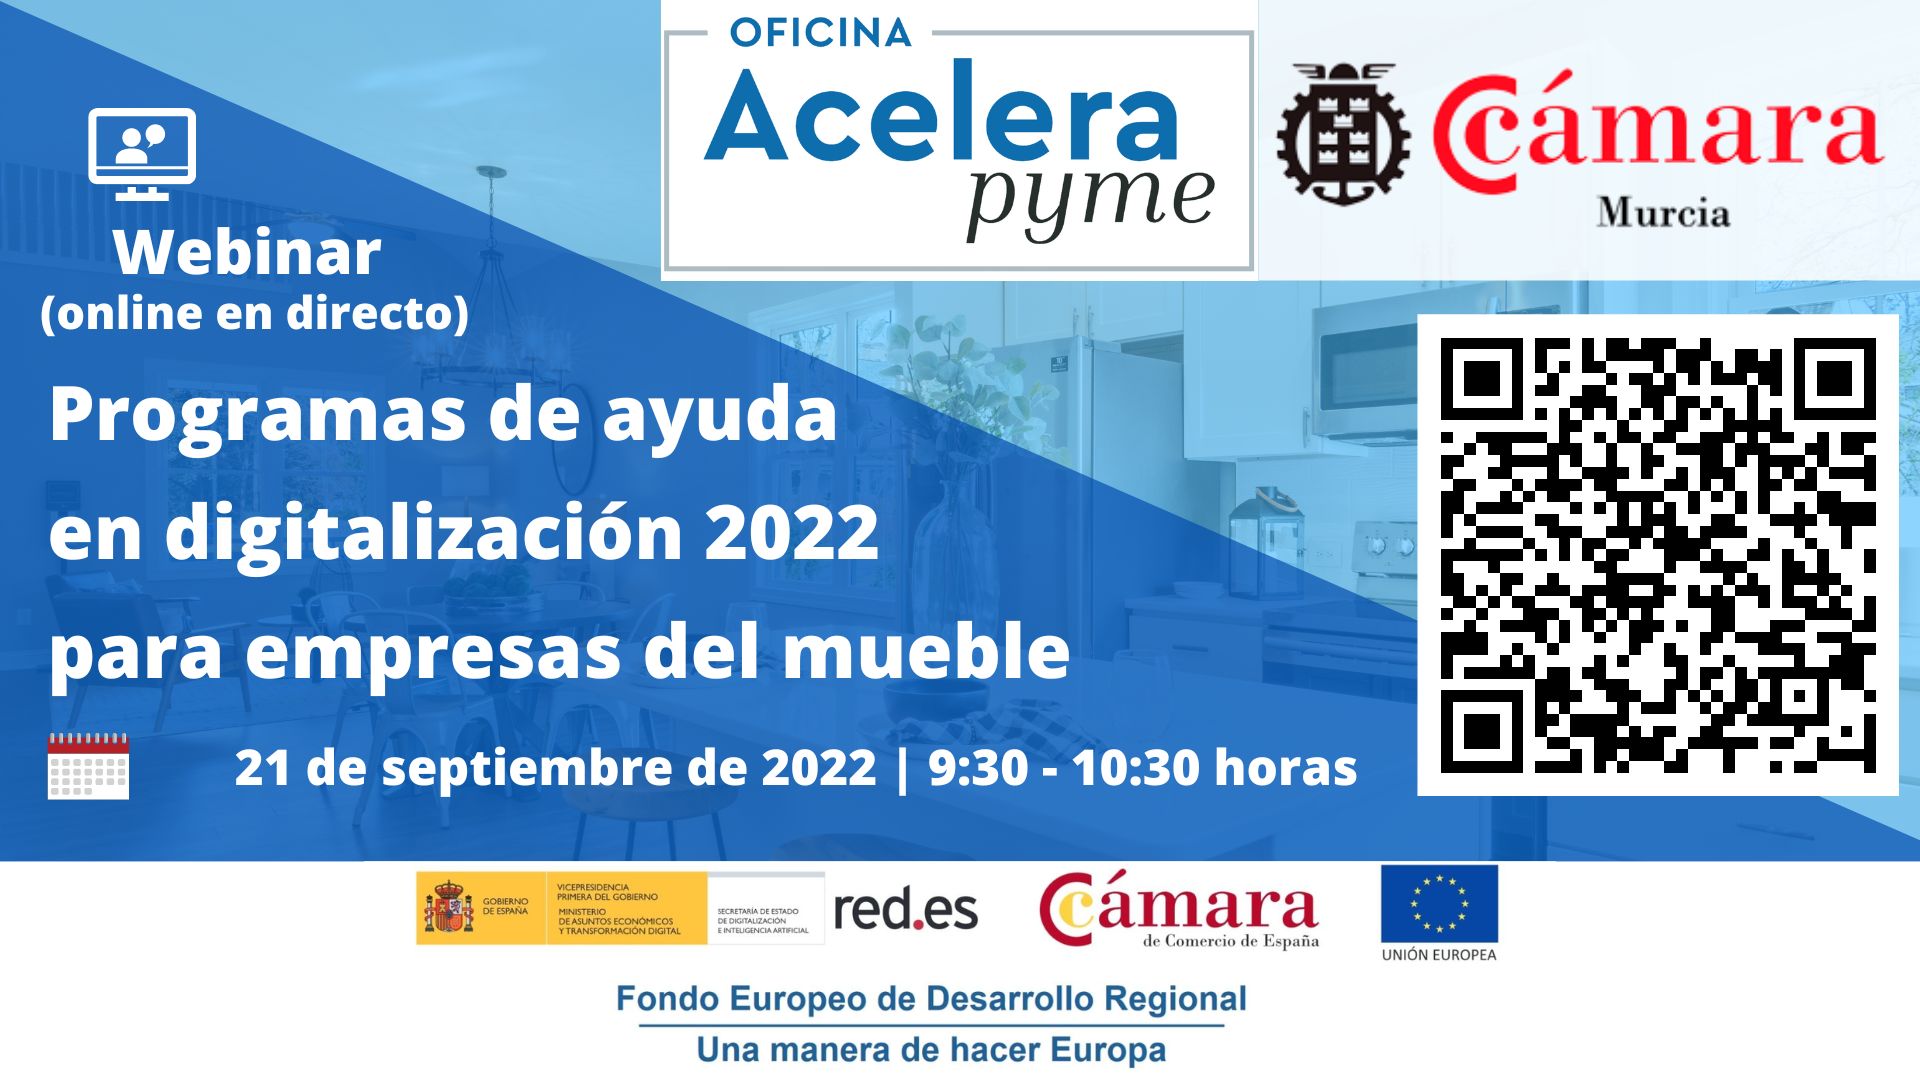 Webinar | Programas de ayudas en digitalización para empresas del sector del mueble | Oficina Acelera Pyme | Cámara de Comercio de Murcia